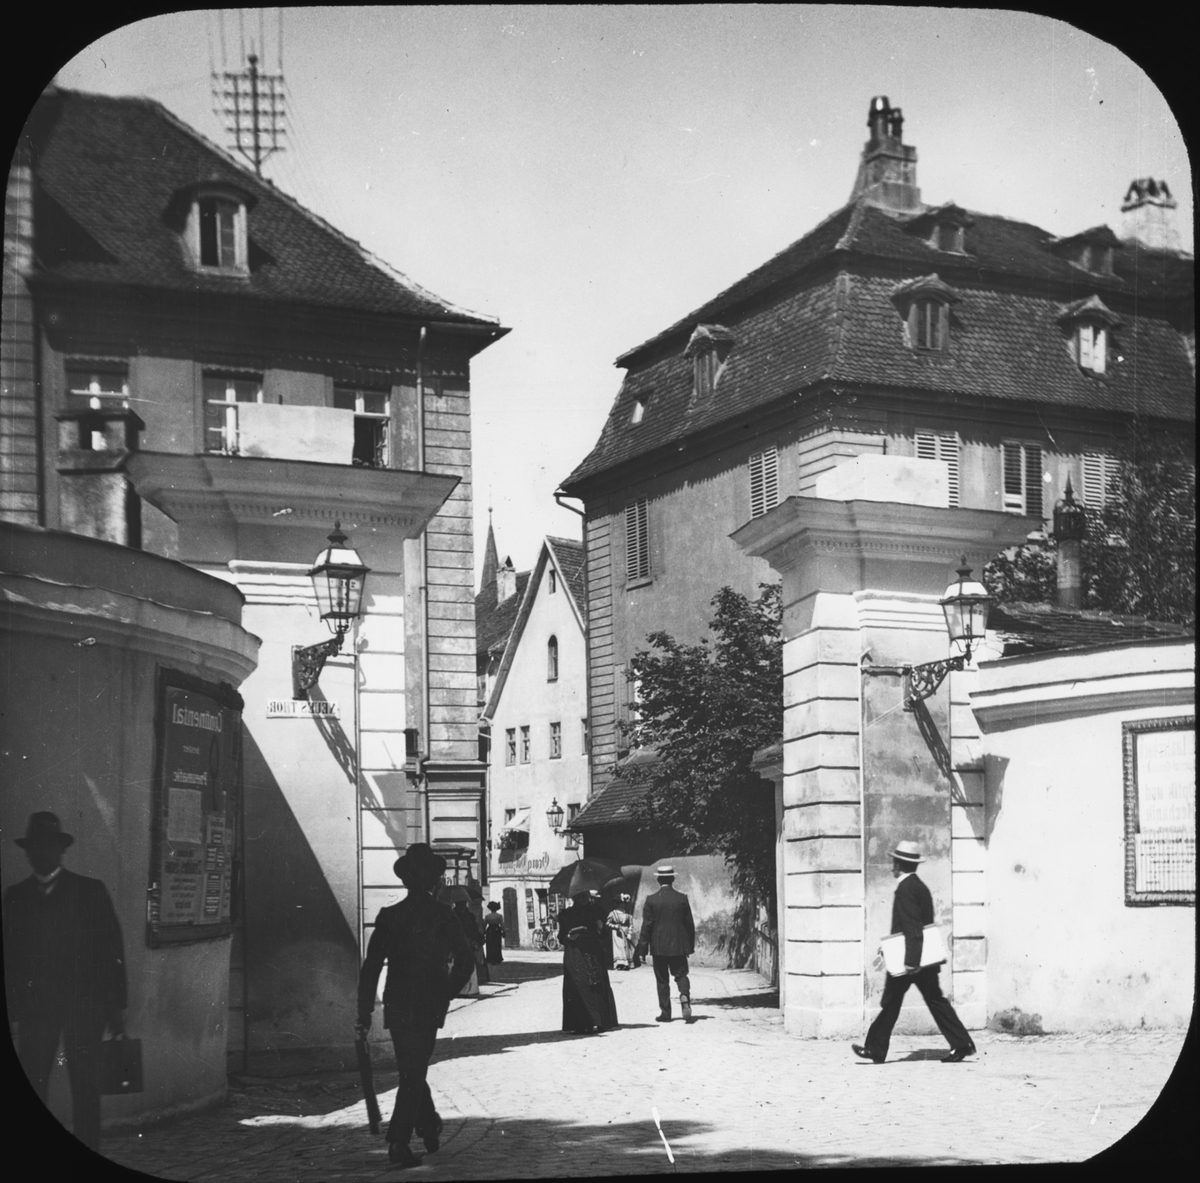 Skioptikonbild med motiv från Ansbach.
Bilden har förvarats i kartong märkt: Resan 1904. Rehnvandring. Oberwesel. Text på bild: "Ansbach 1910".